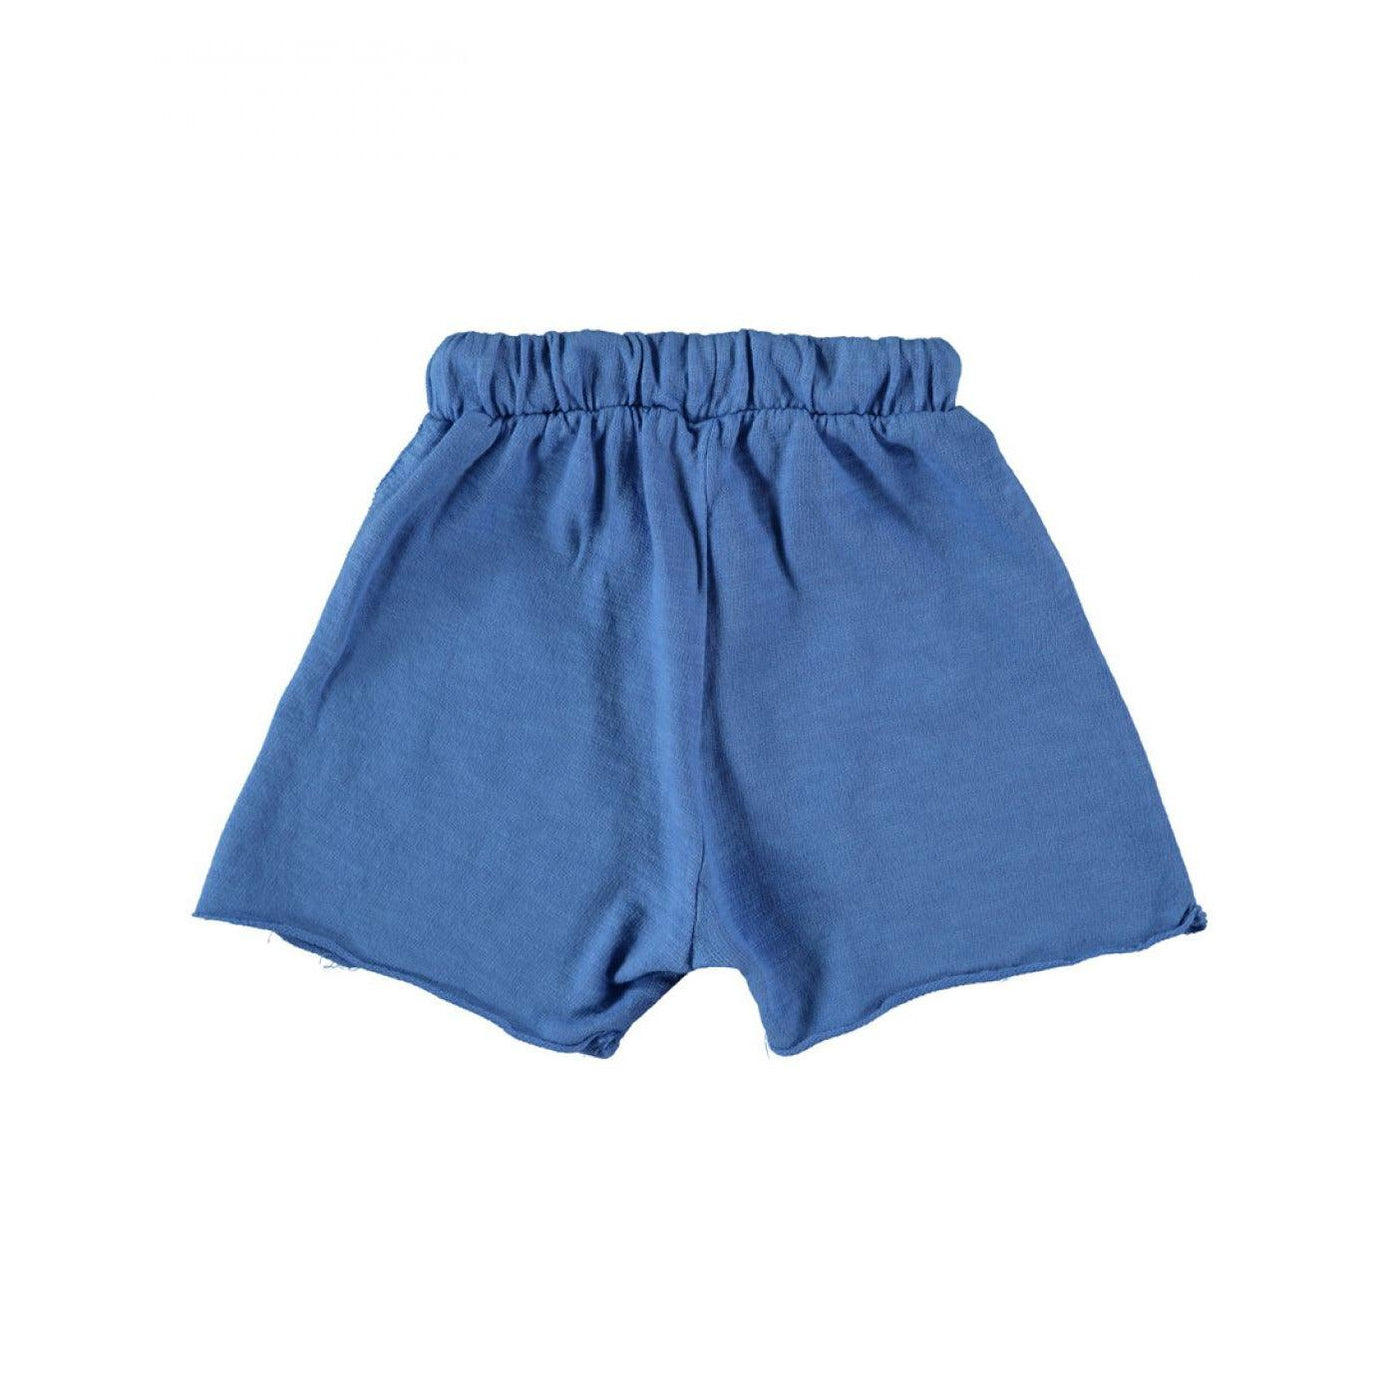 BABYCLIC - Shorts Emporda Electric Blue - Le CirQue Kidsconceptstore 